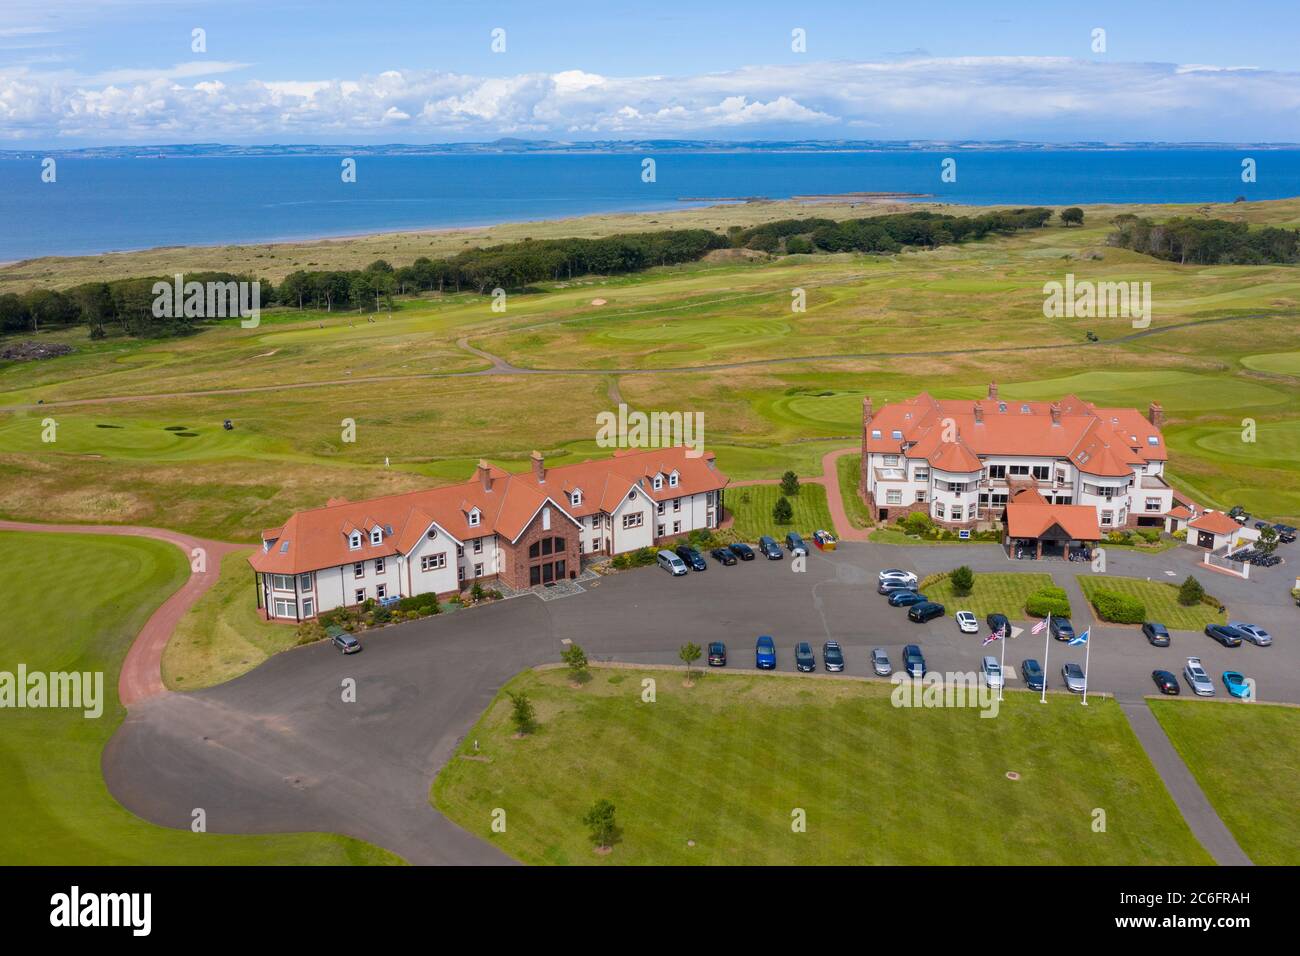 Vue aérienne du pavillon du parcours de golf Renaissance Club près de North Berwick à East Lothian, Écosse, Royaume-Uni Banque D'Images